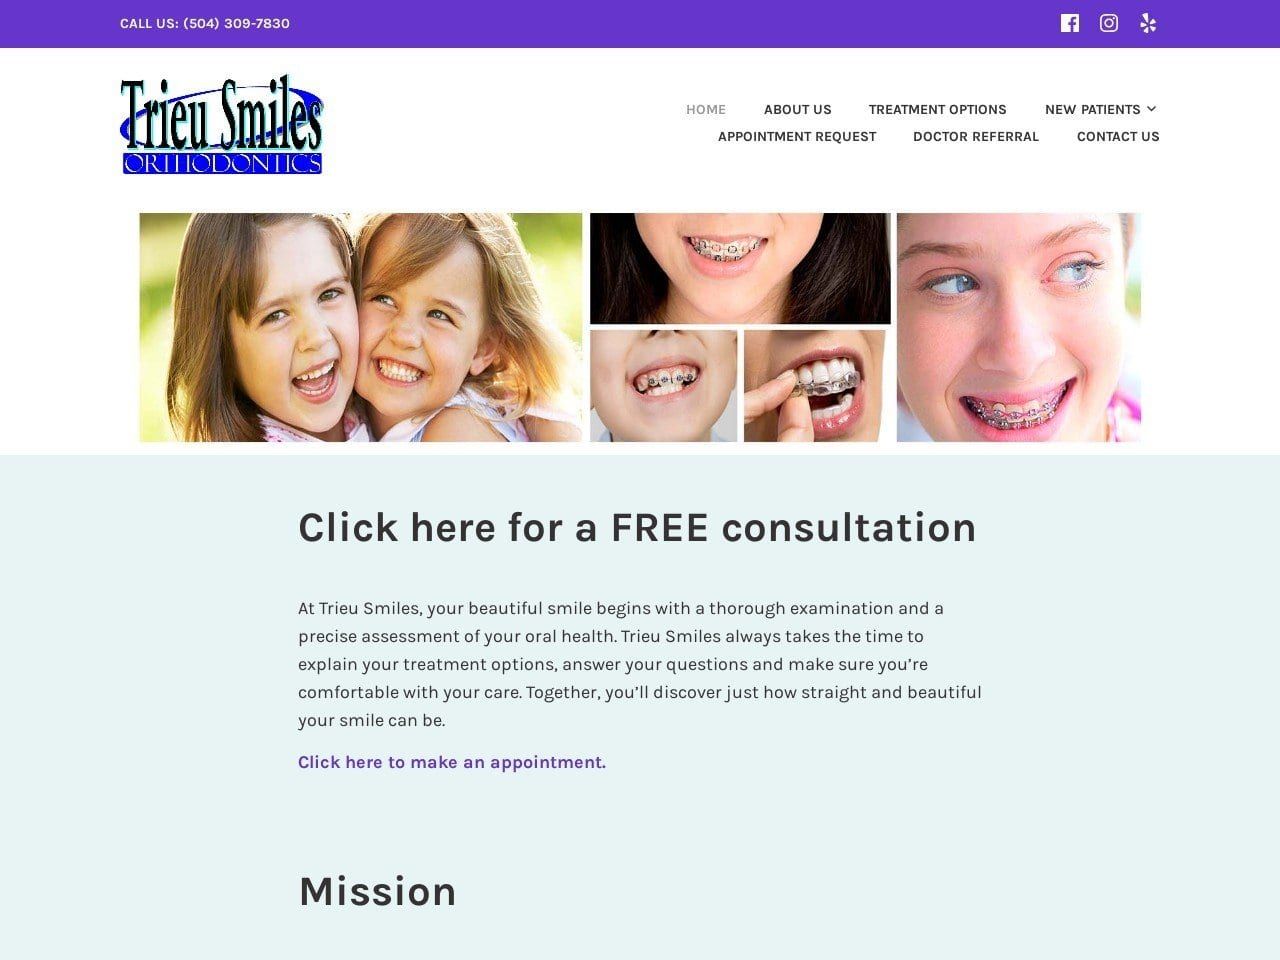 Trieu Smiles Orthodontics Website Screenshot from trieusmiles.com